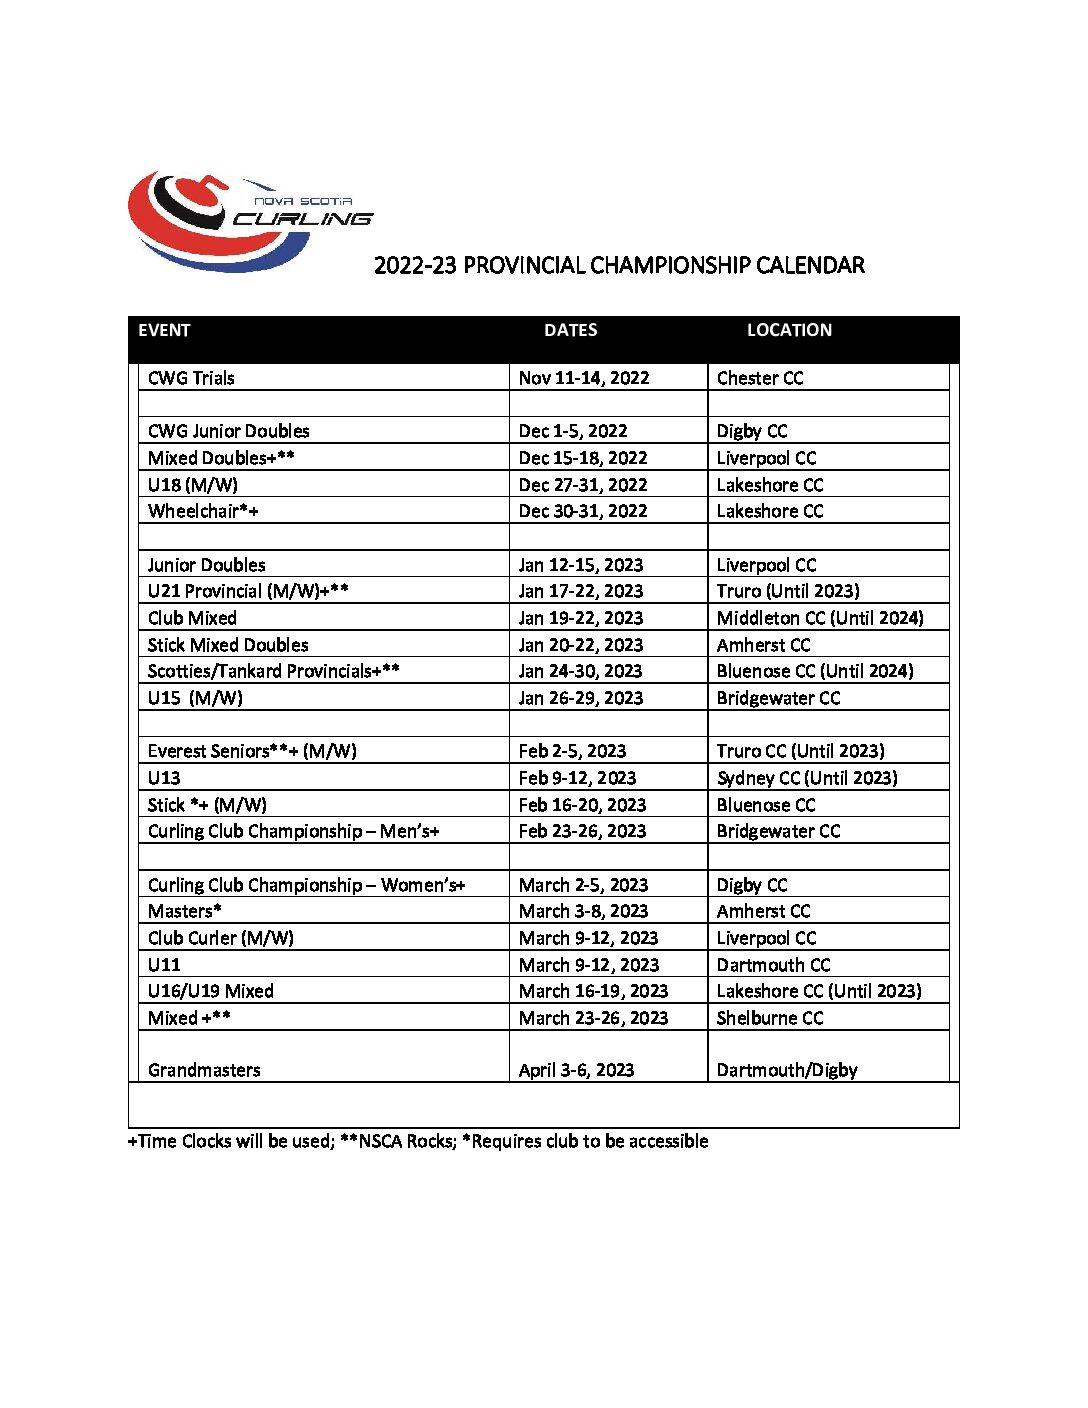 Championship Calendar | Nova Scotia Curling Association